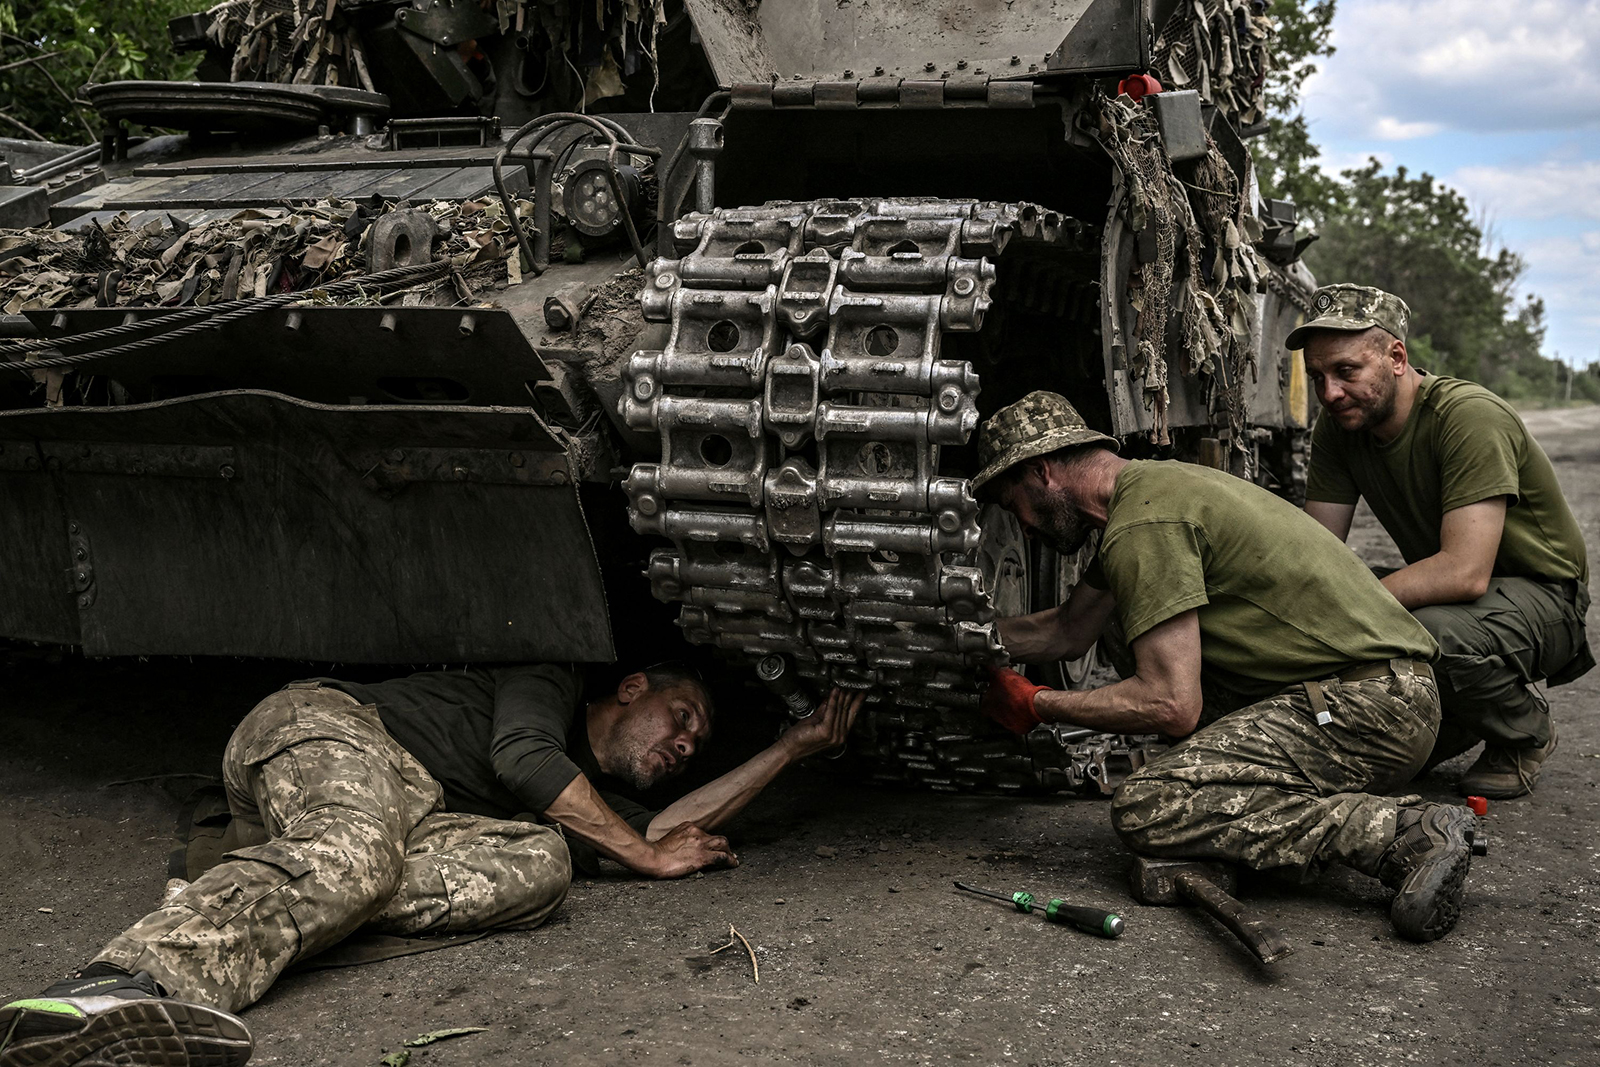 Ukrainian troop members repair an army's Main Battle Tank (MBT) in the eastern Ukrainian region of Donbas on June 7.